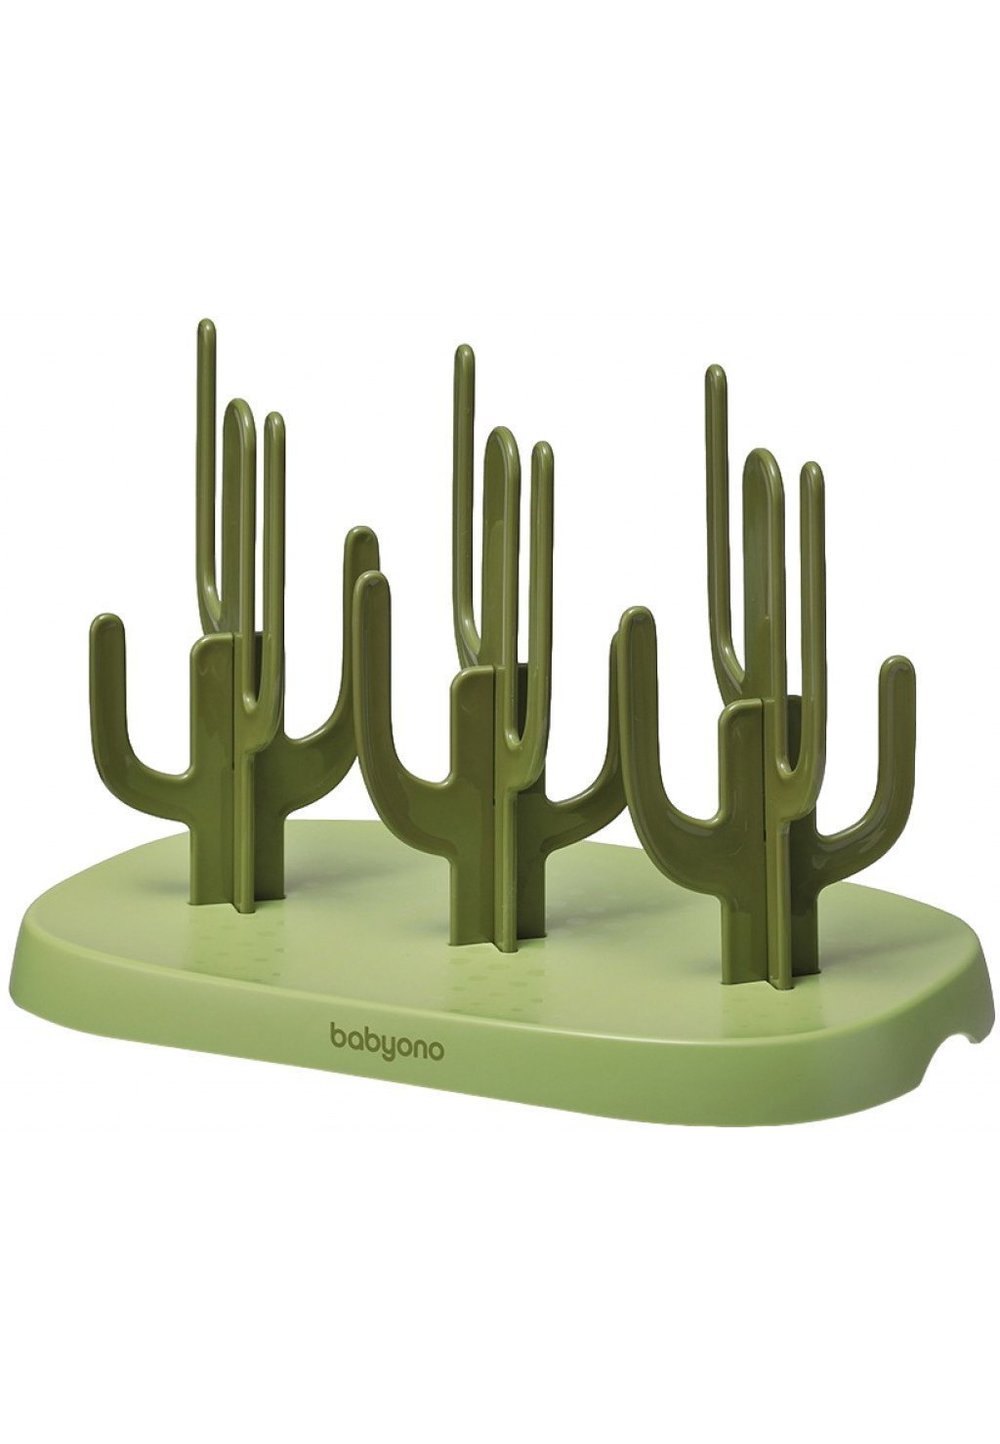 Suport pentru biberoane, Cactus, verde imagine